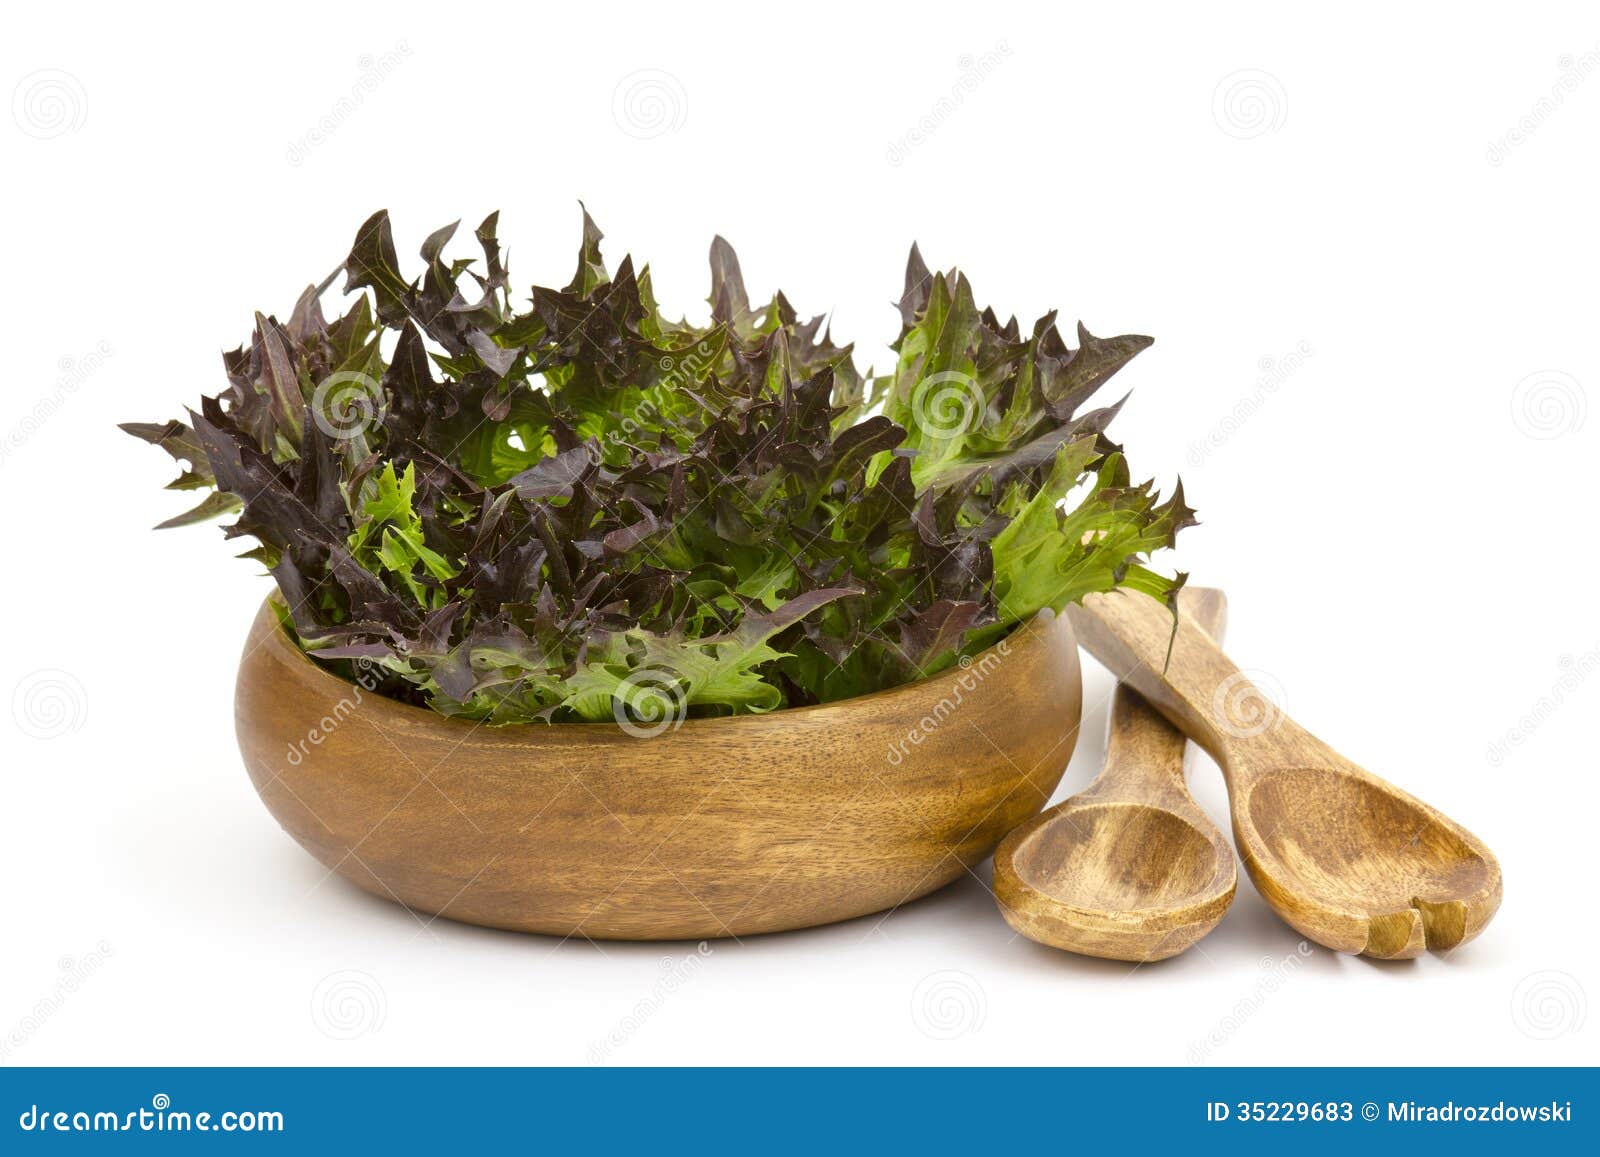 lollo rosso lettuce in a bowl